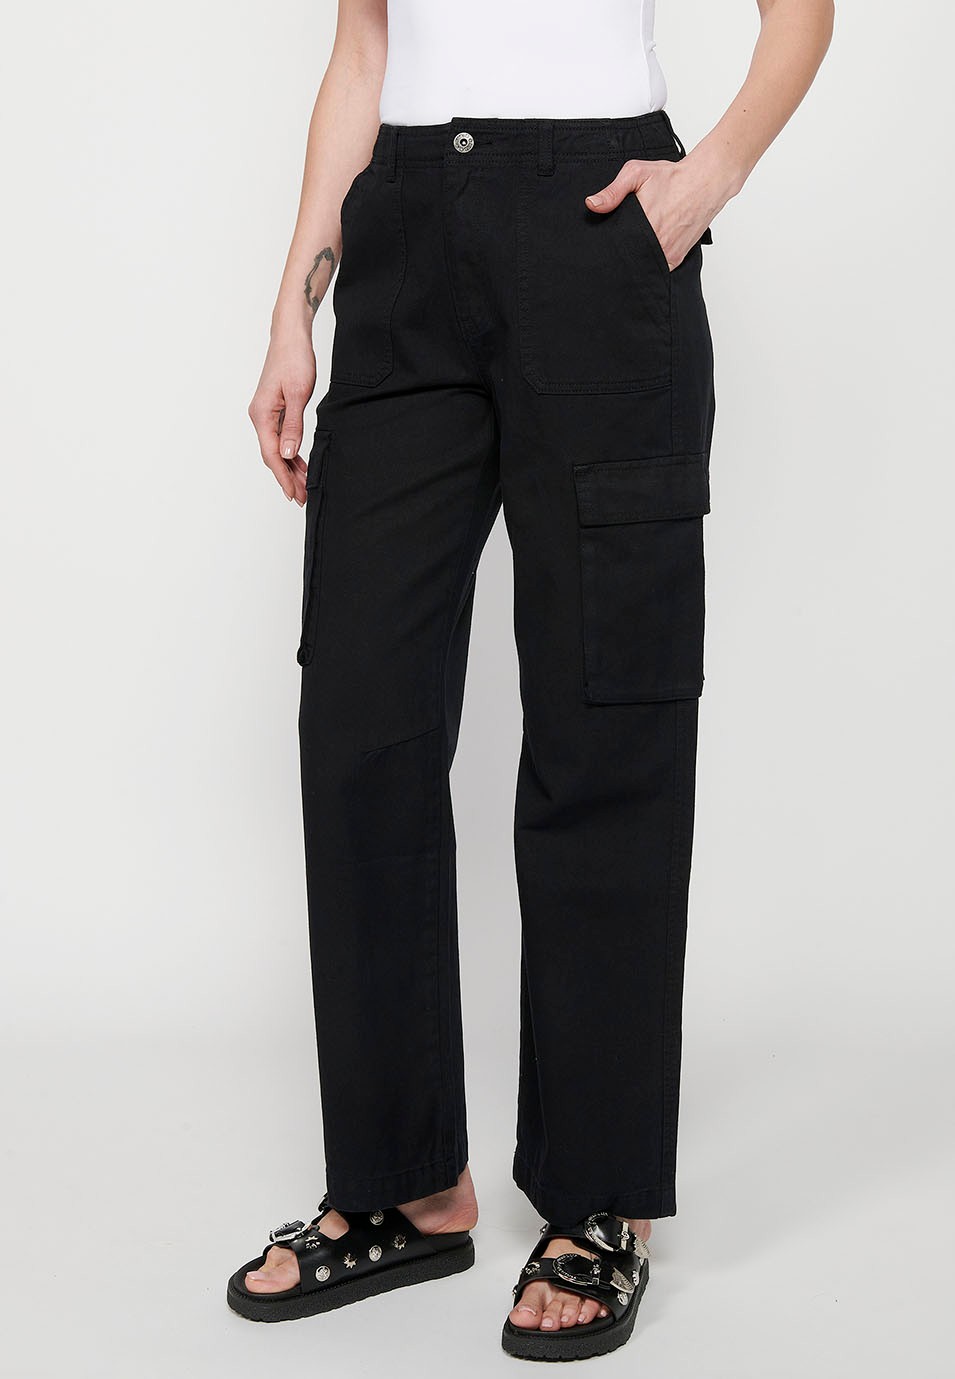 Lange Baumwoll-Cargohose mit Taschen, schwarze Farbe für Damen